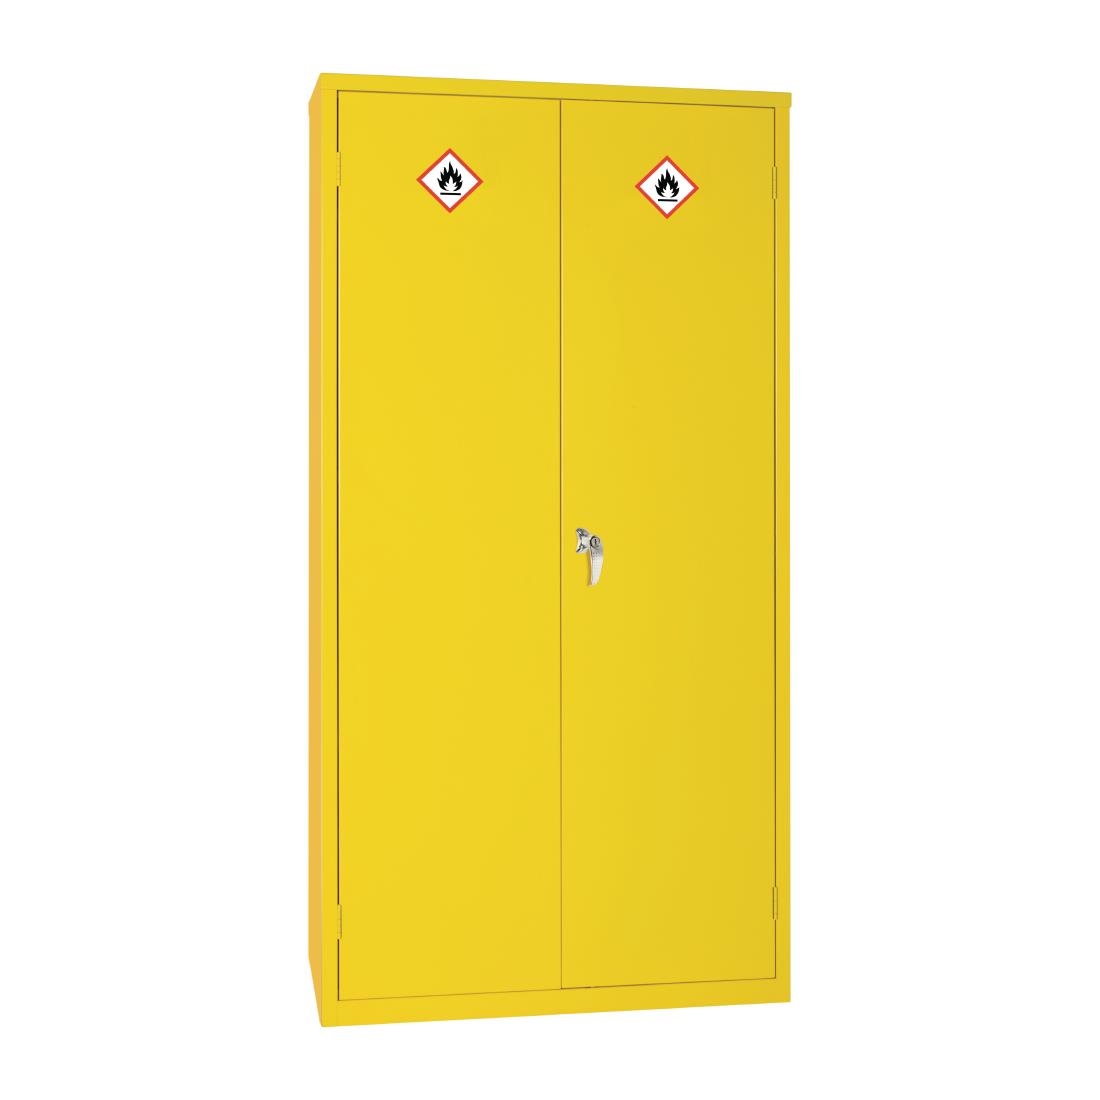 Hazardous Substance Cabinet Double Door Yellow 50Ltr